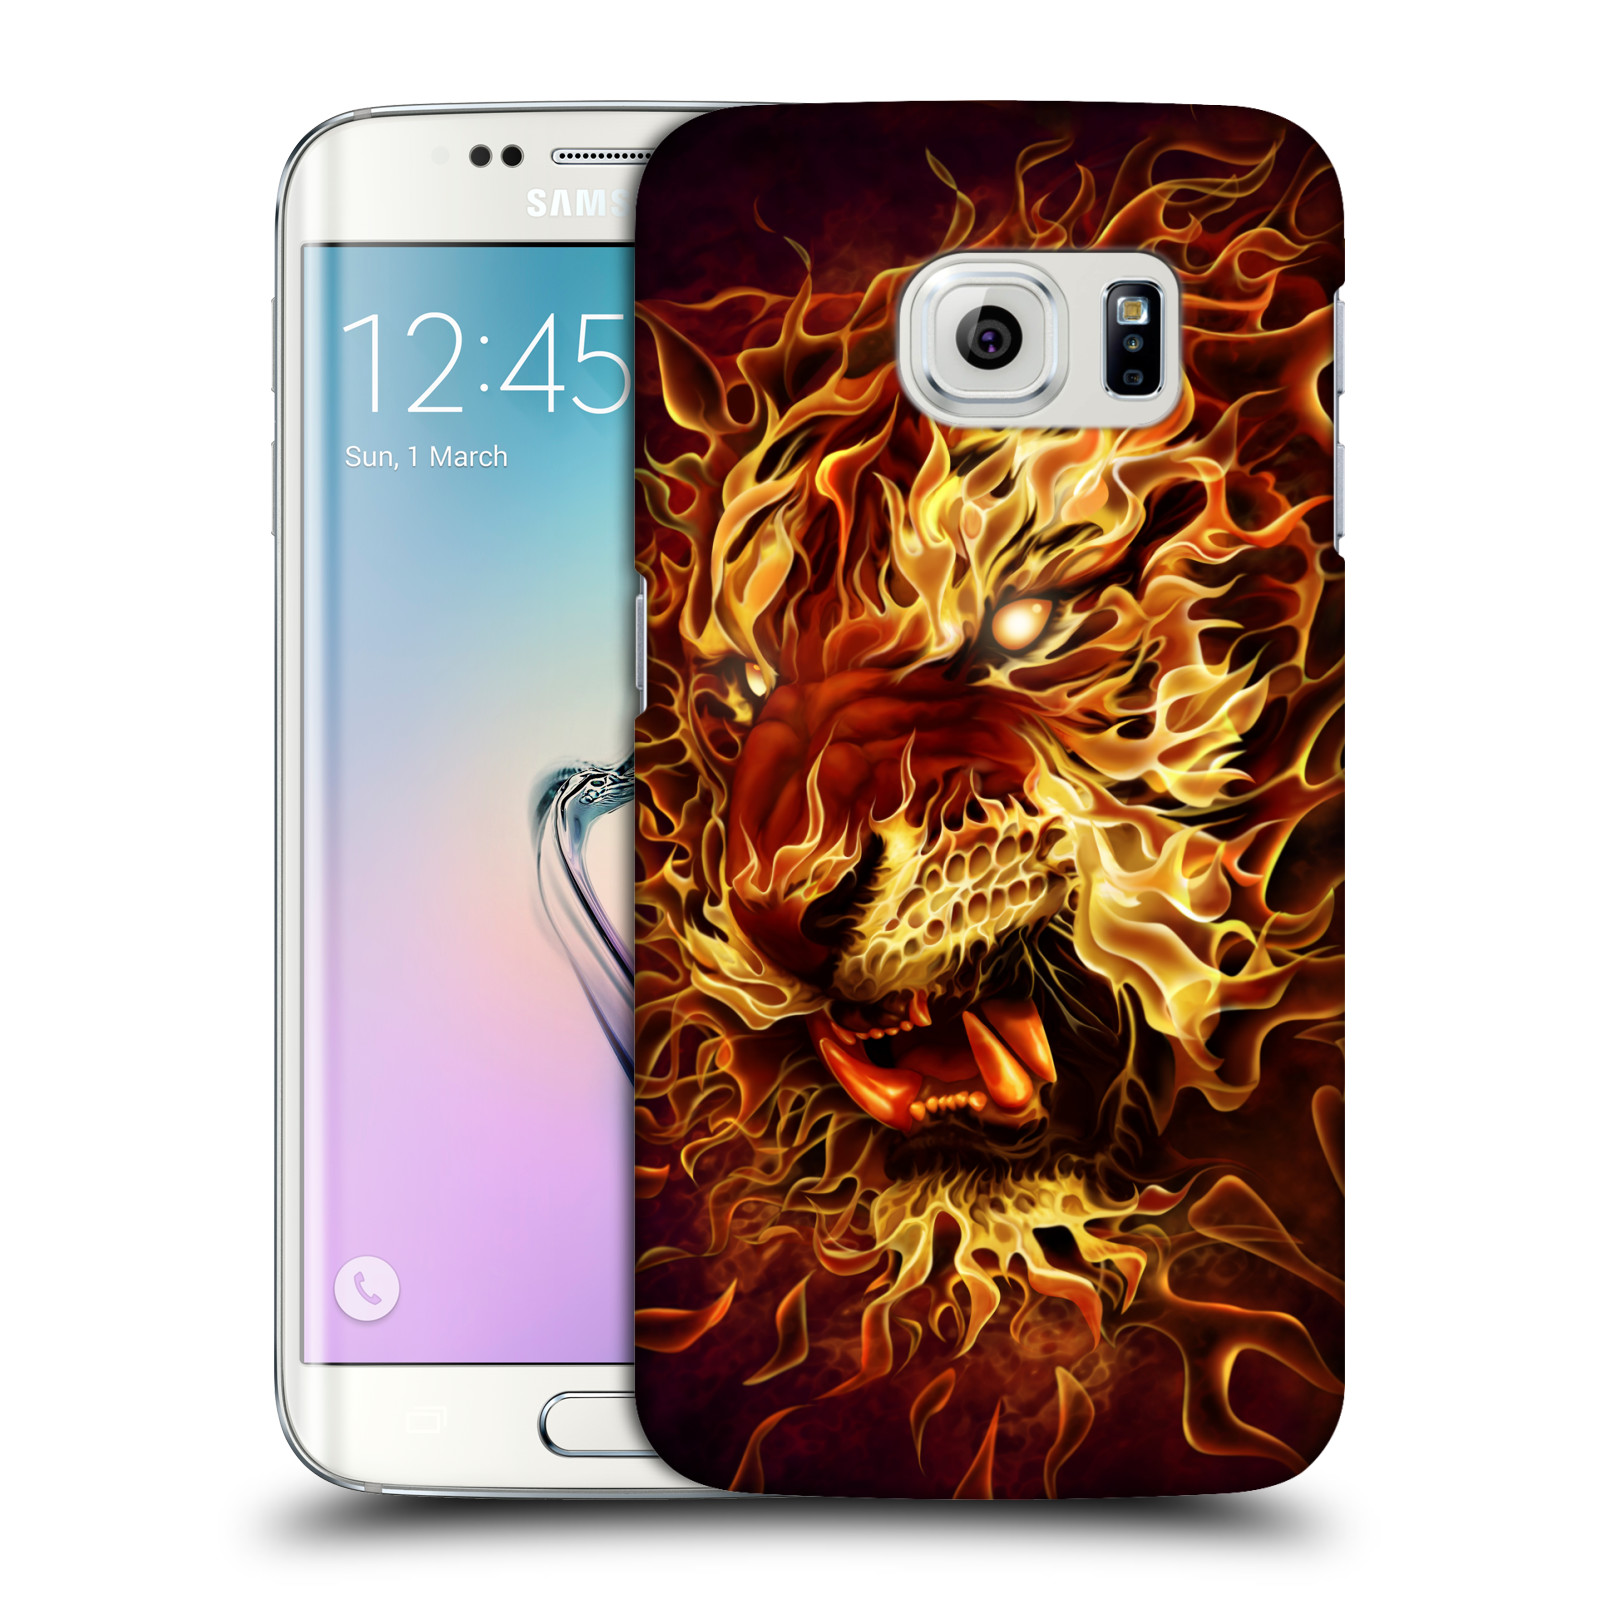 Pouzdro na mobil Samsung Galaxy S6 EDGE - HEAD CASE - Fantasy kresby Tom Wood - Ohnivý tygr